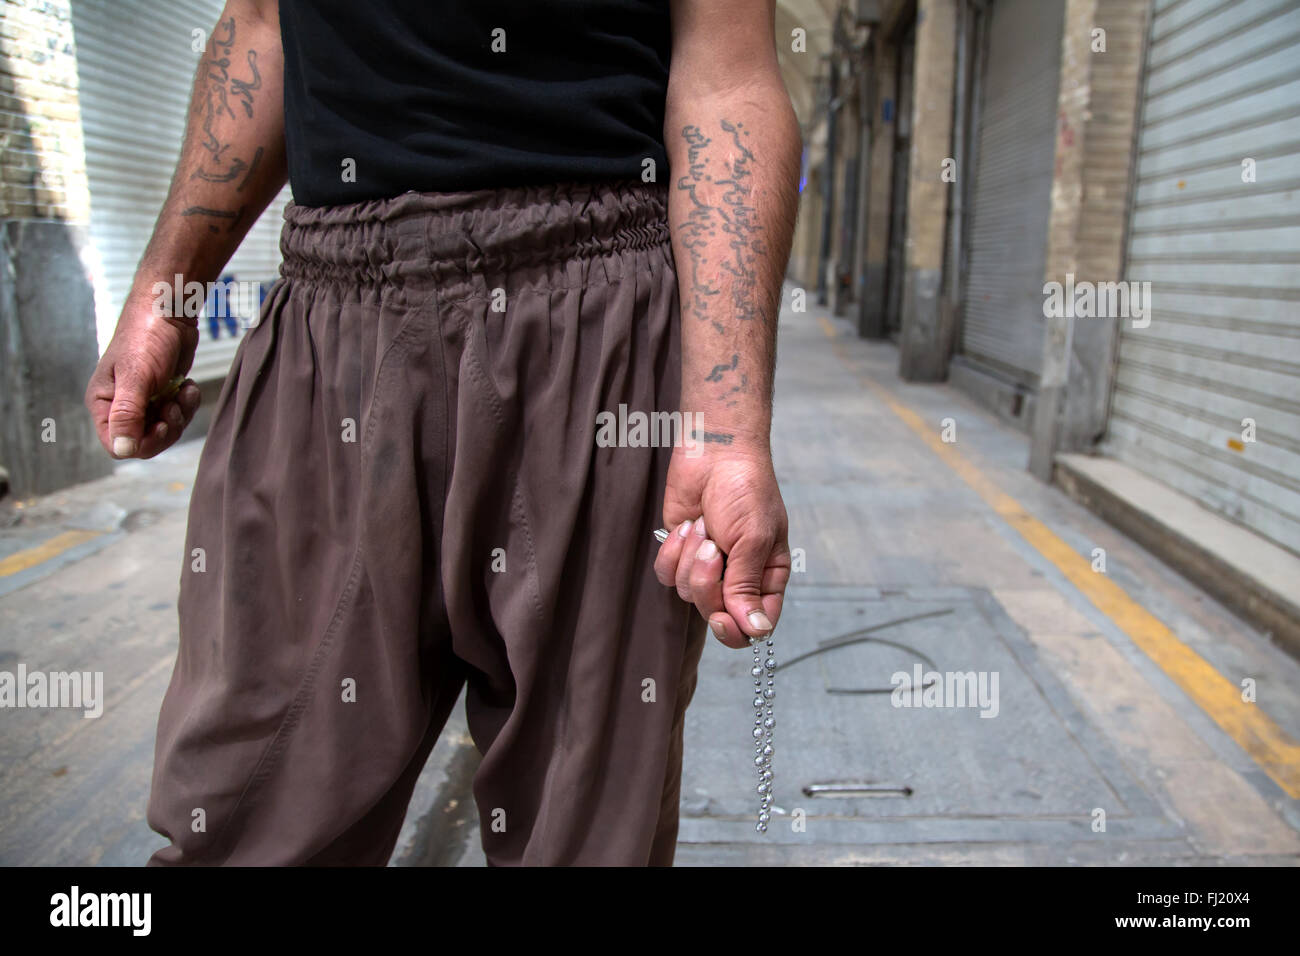 Un homme montre des tatouages sur ses bras écrit en persan dans le grand bazar de Téhéran, Iran Banque D'Images